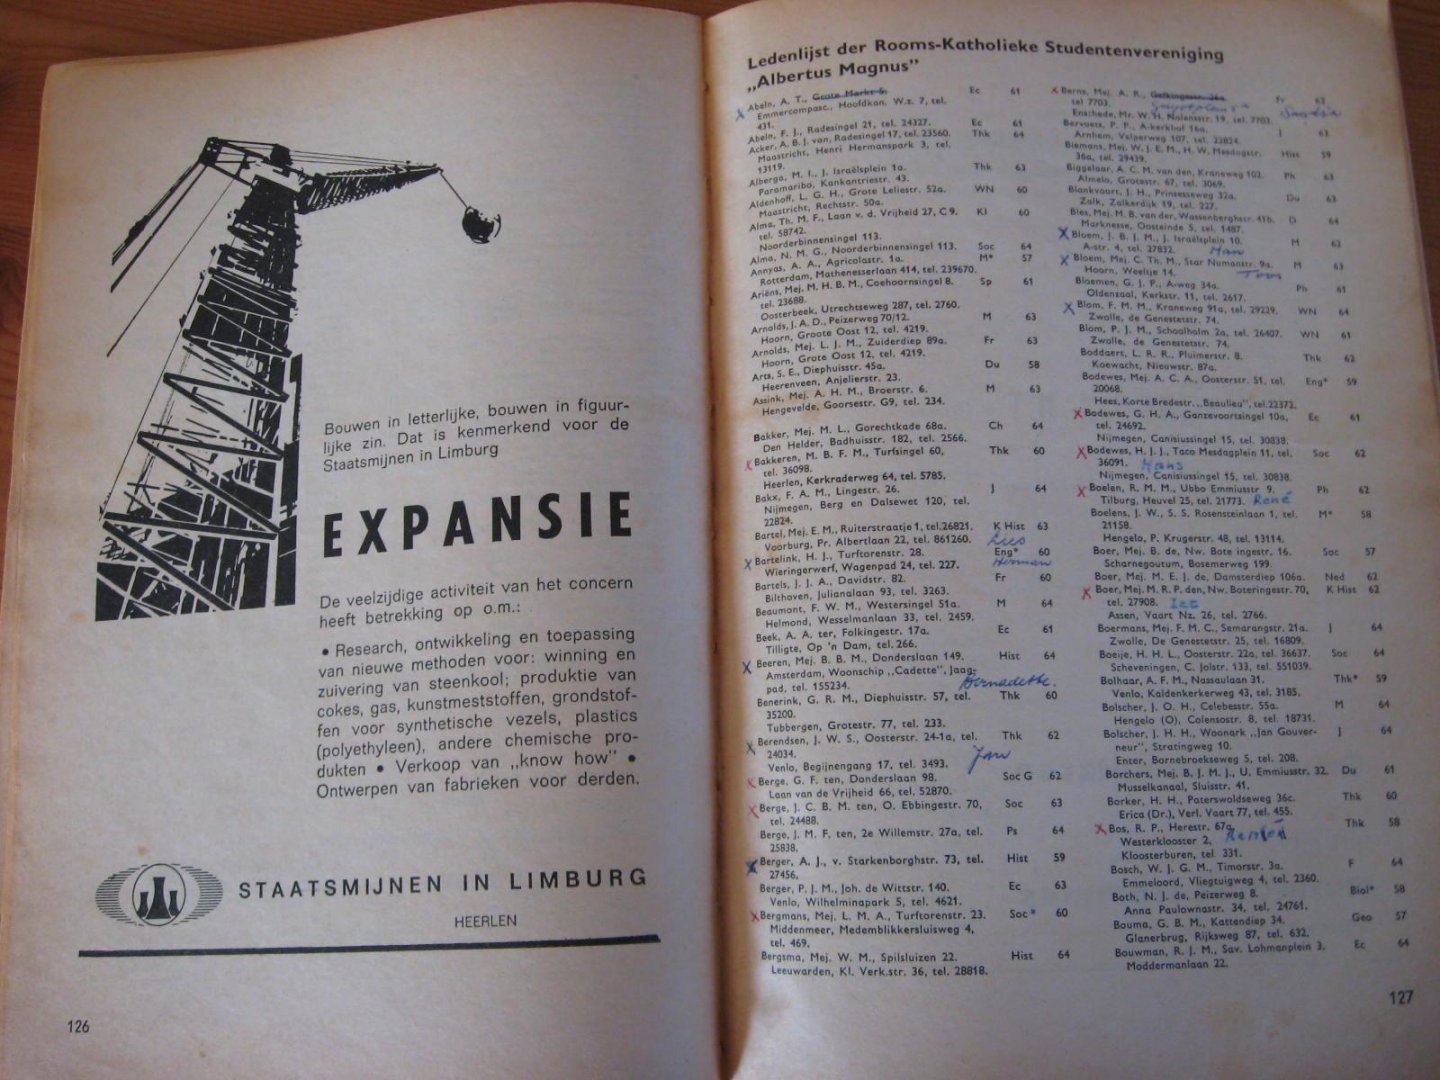 Almanakredactie GSC Vindicat - Adreslijst 1965 en inlichtingen betreffende de Rijksuniversiteit Groningen per 1 nov. 1964